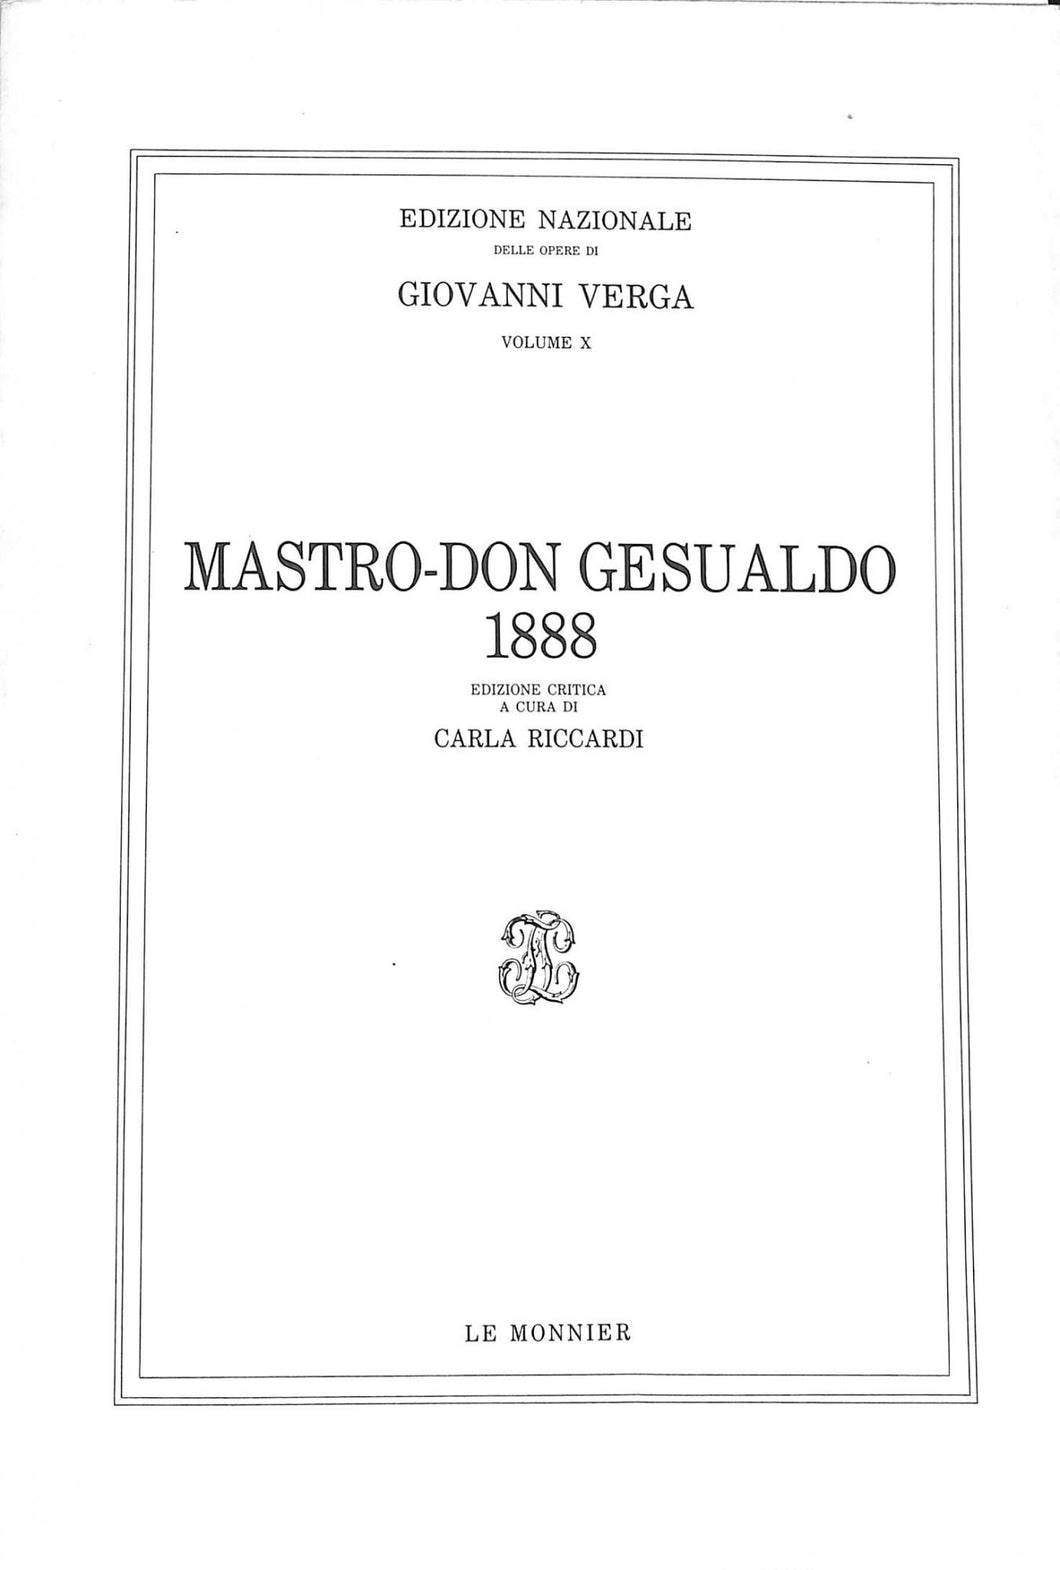 Mastro don Gesualdo (1888)
di Giovanni Verga